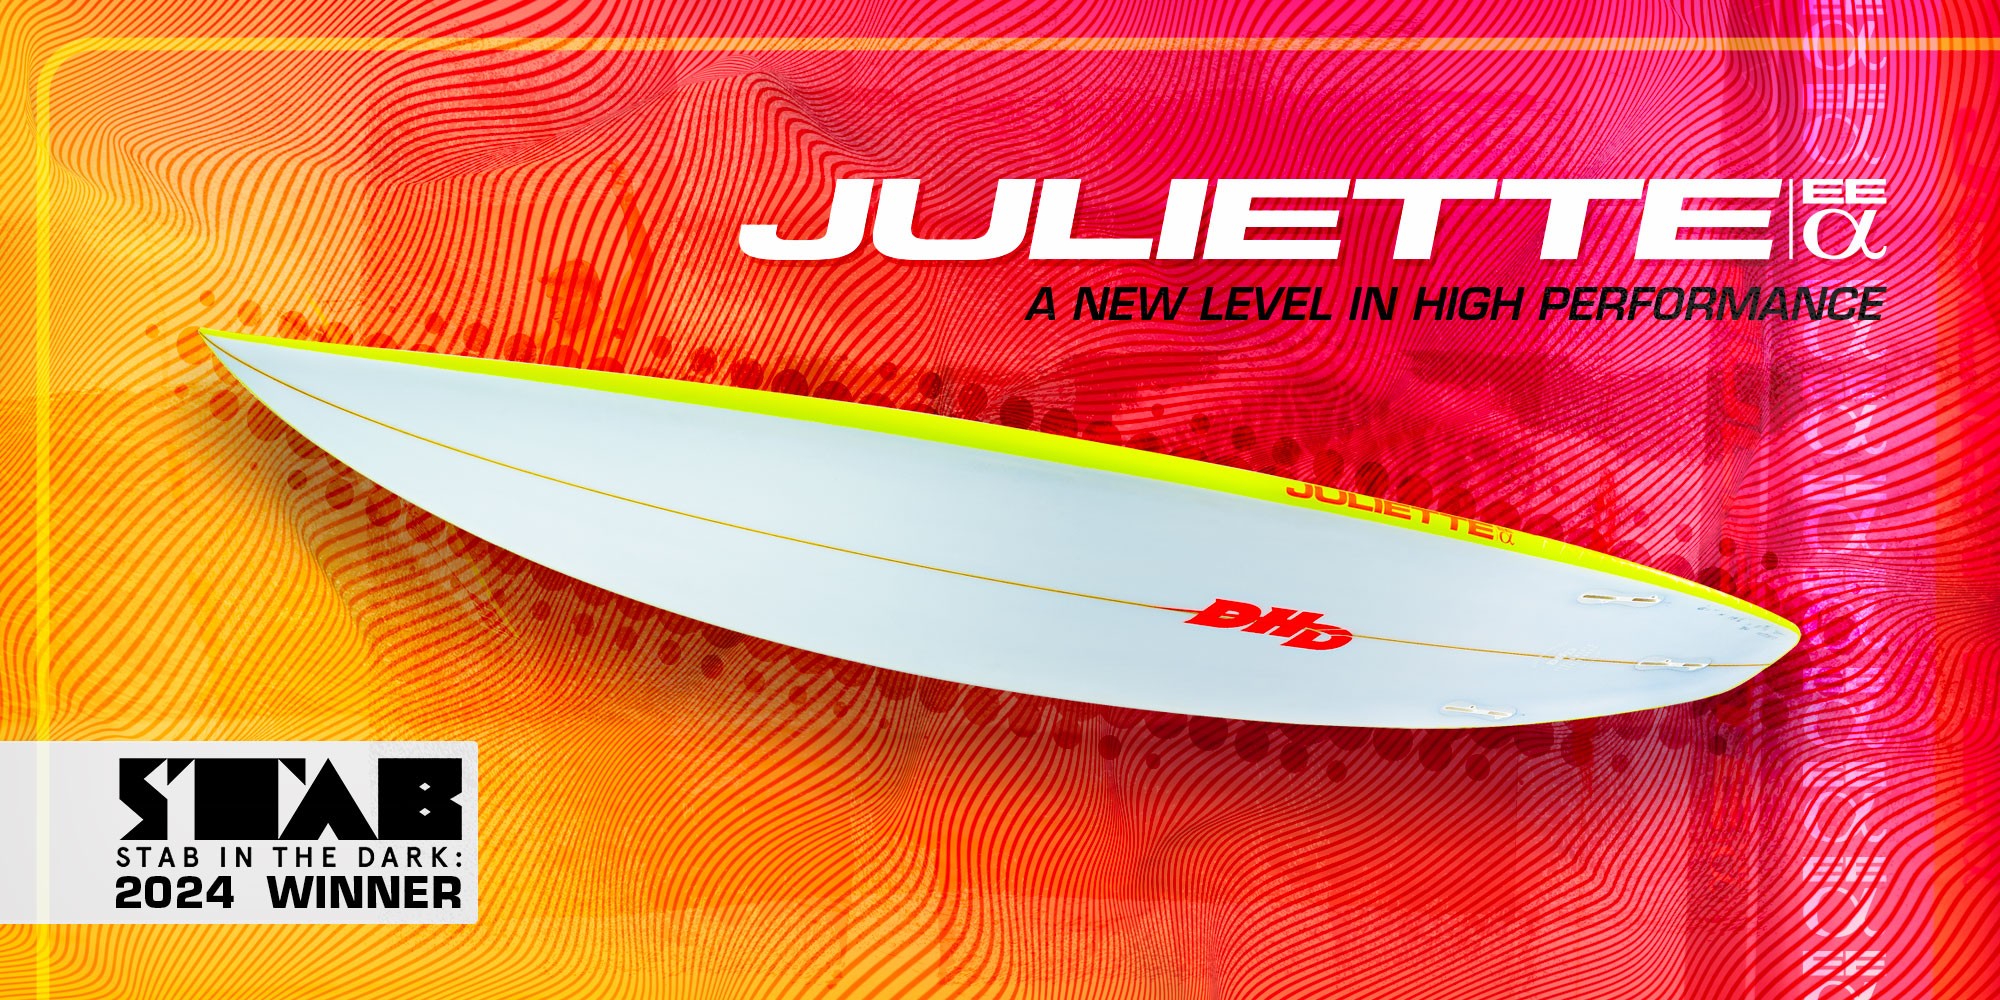 Descubra a prancha de surf DHD Juliette 6'0" FCS II, uma escolha verstil para surfistas de todos os nveis. Fabricada com materiais de alta qualidade para desempenho superior. Encomende agora na Surfers Lab.